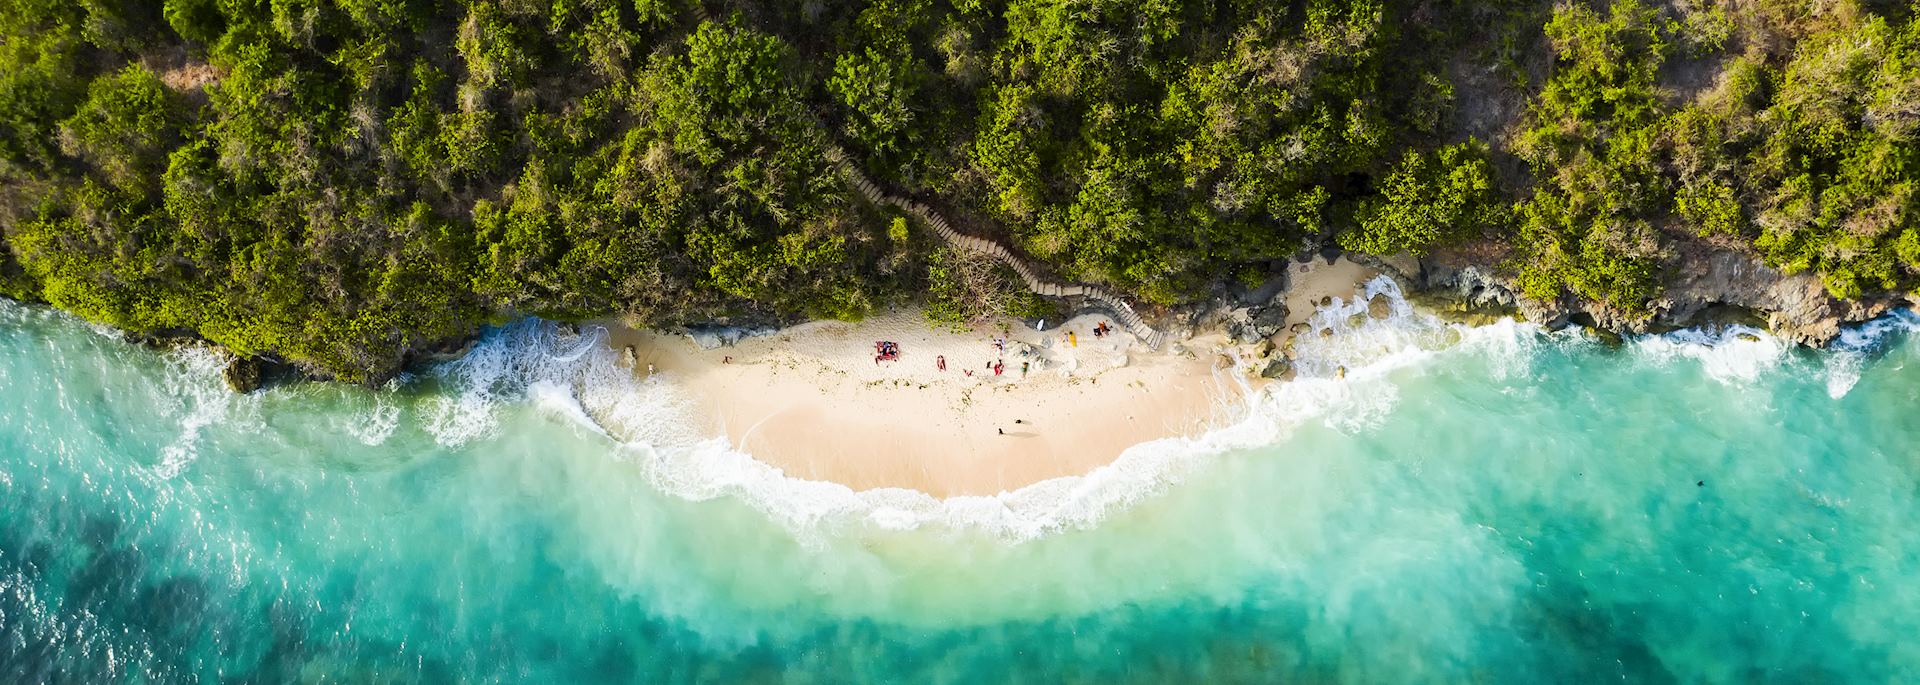 Bali beach in Indonesia